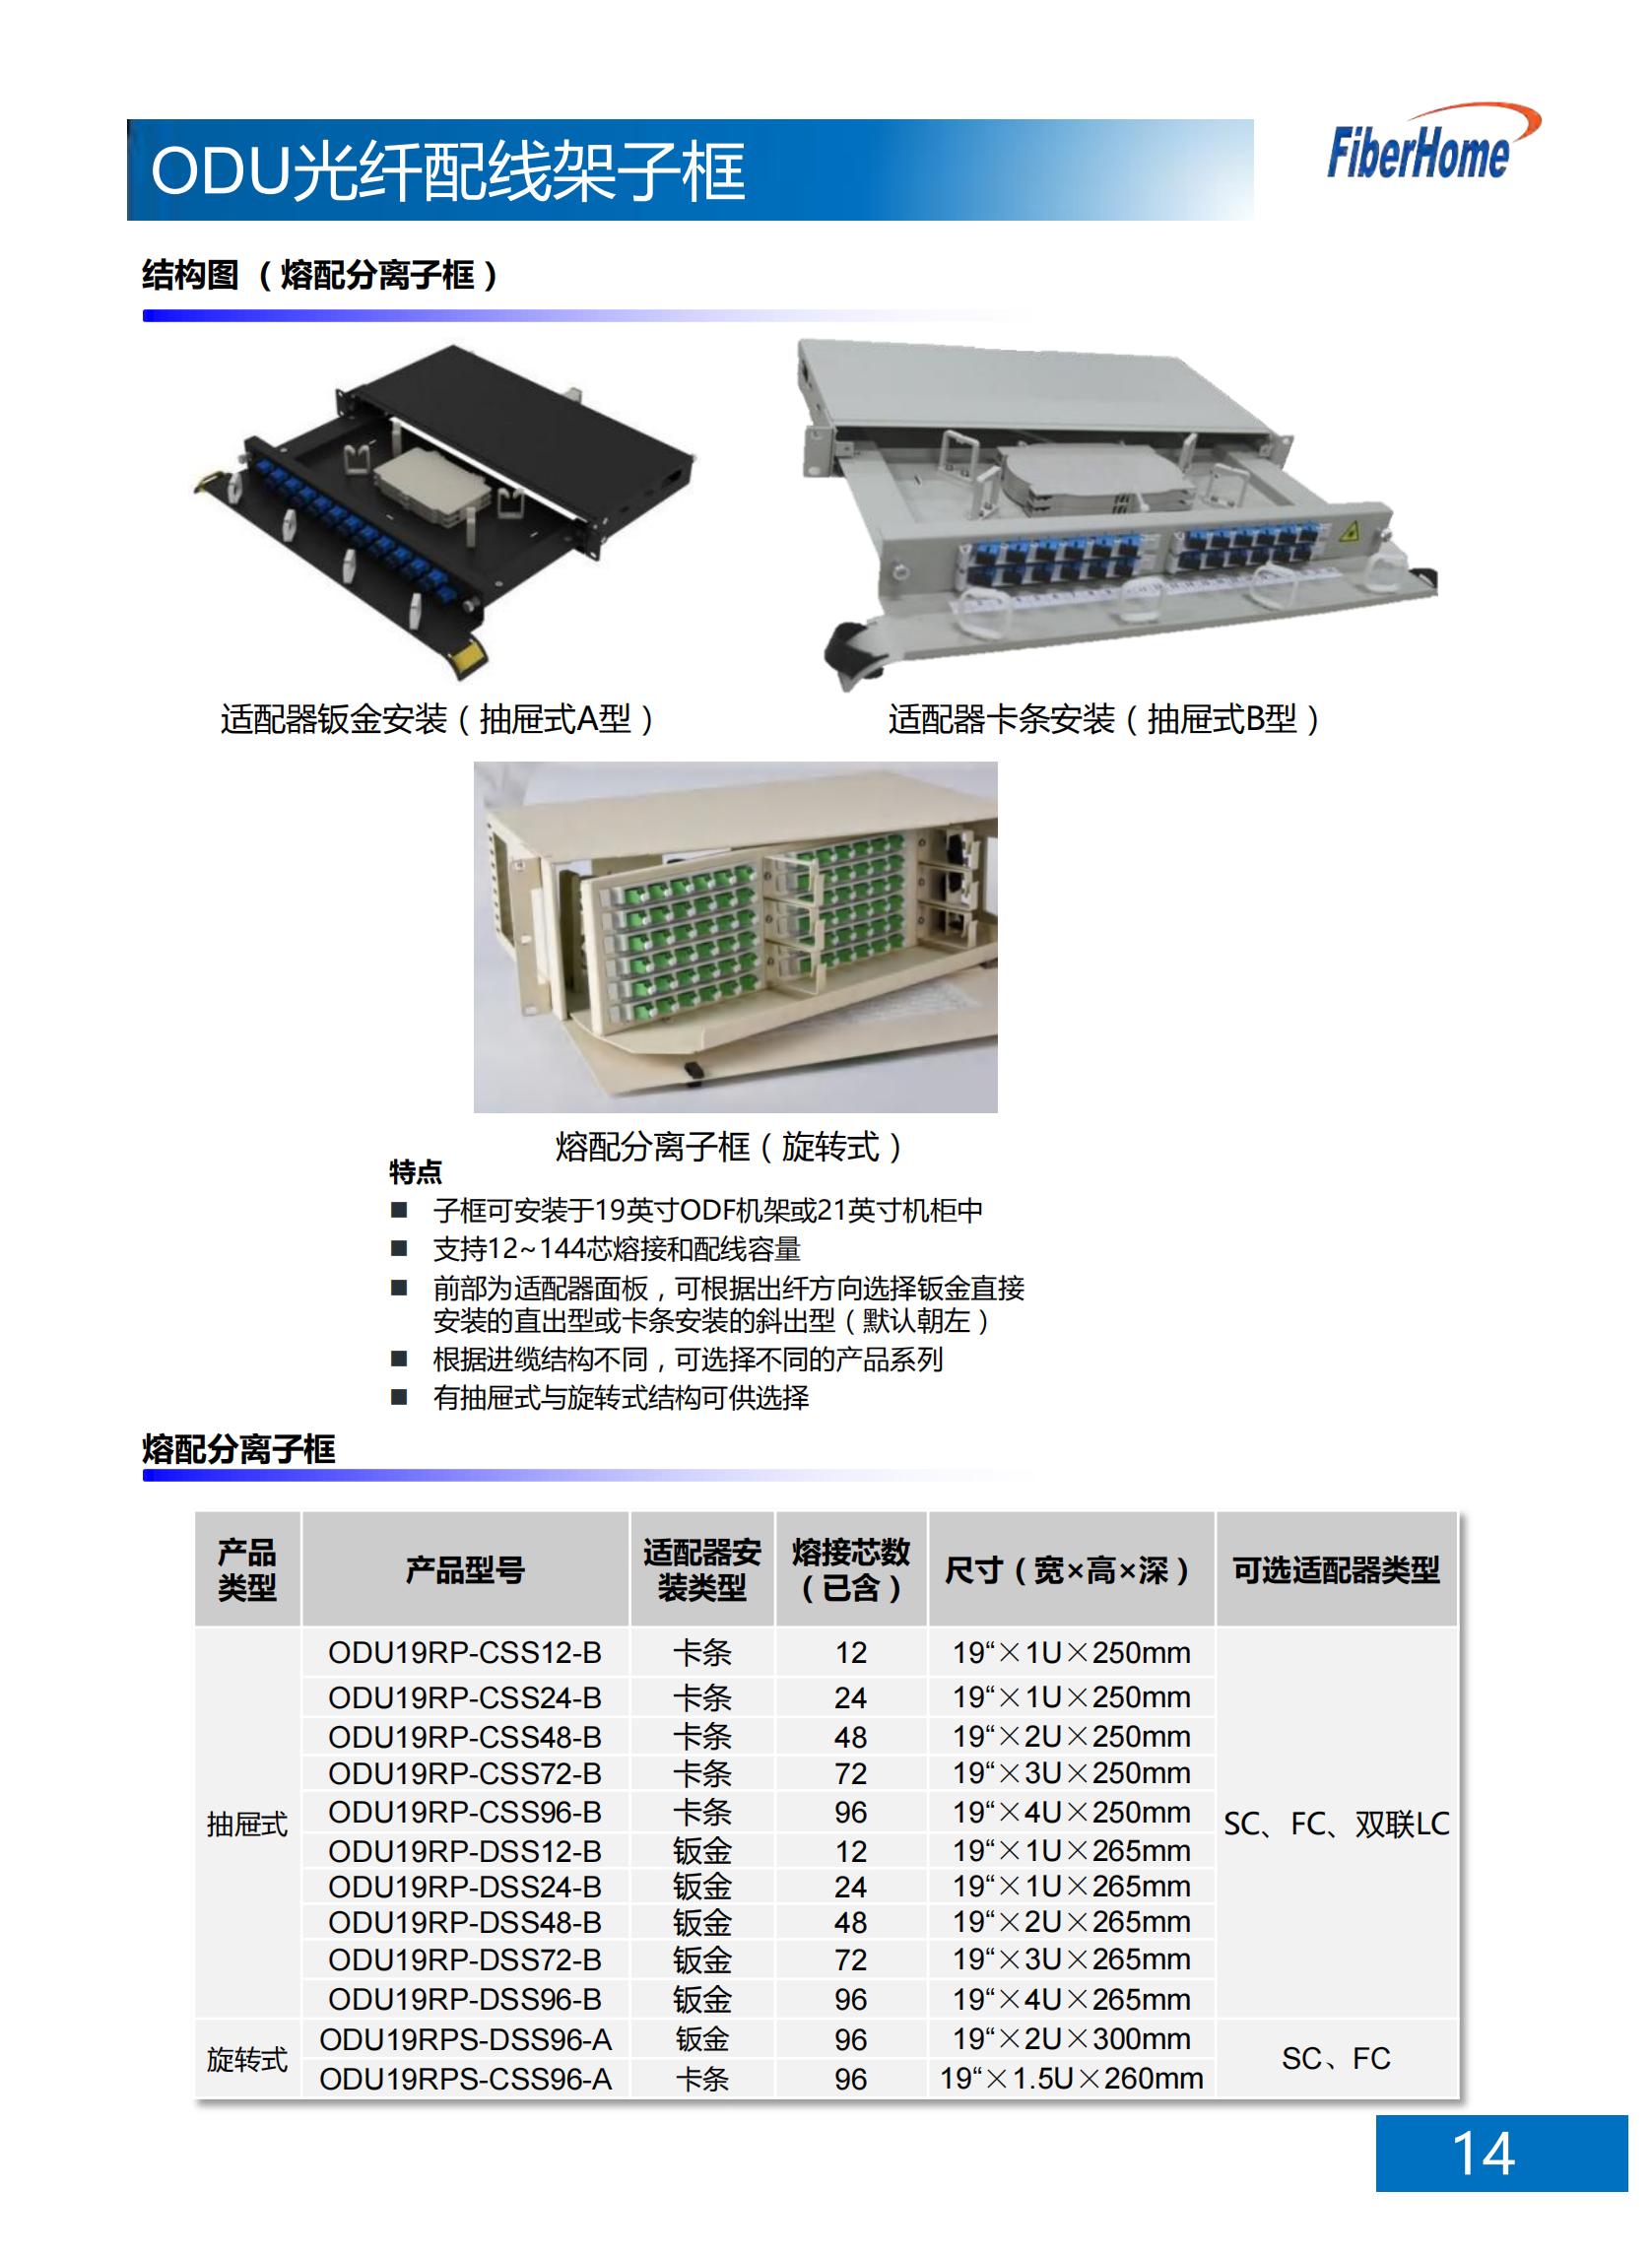 96芯 ODU光纤配线架子框 ODU19T-A1296-A-FC （含12芯FC熔配一体化单元*8）